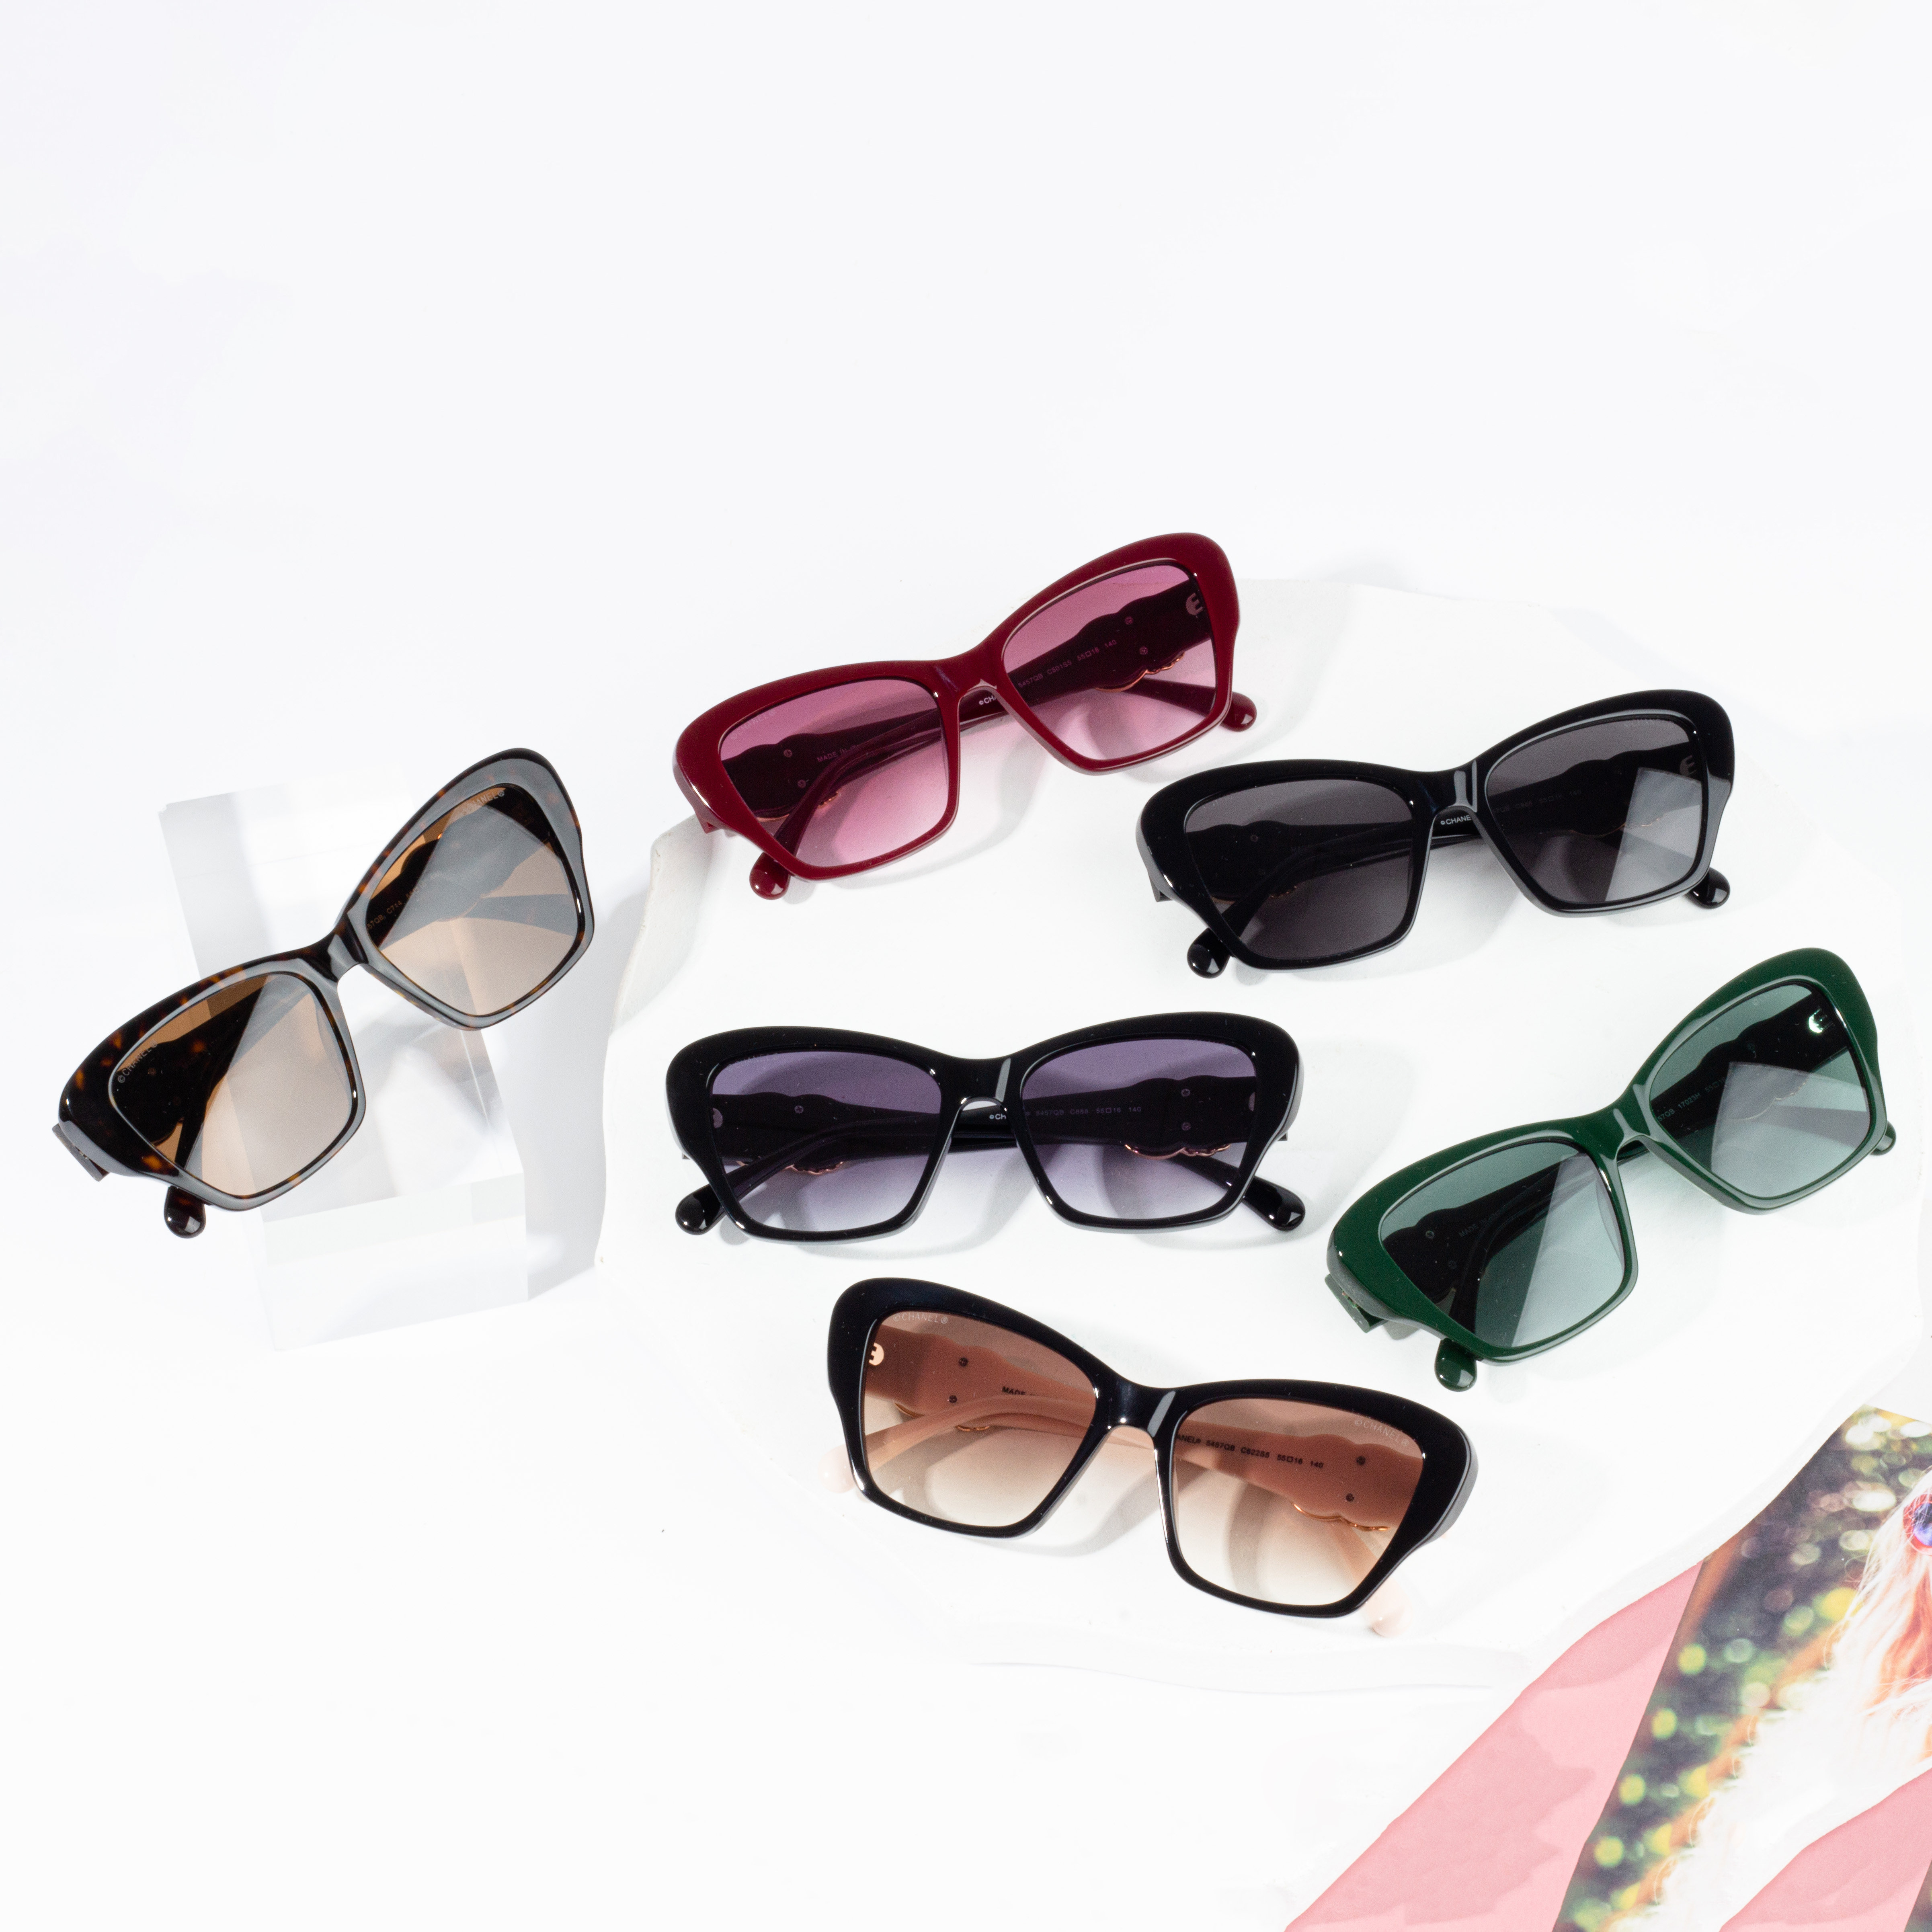 Factory directly Laser Protective Eyewear - UV 400 Protection Lady Sunglasses Promotion – HJ EYEWEAR